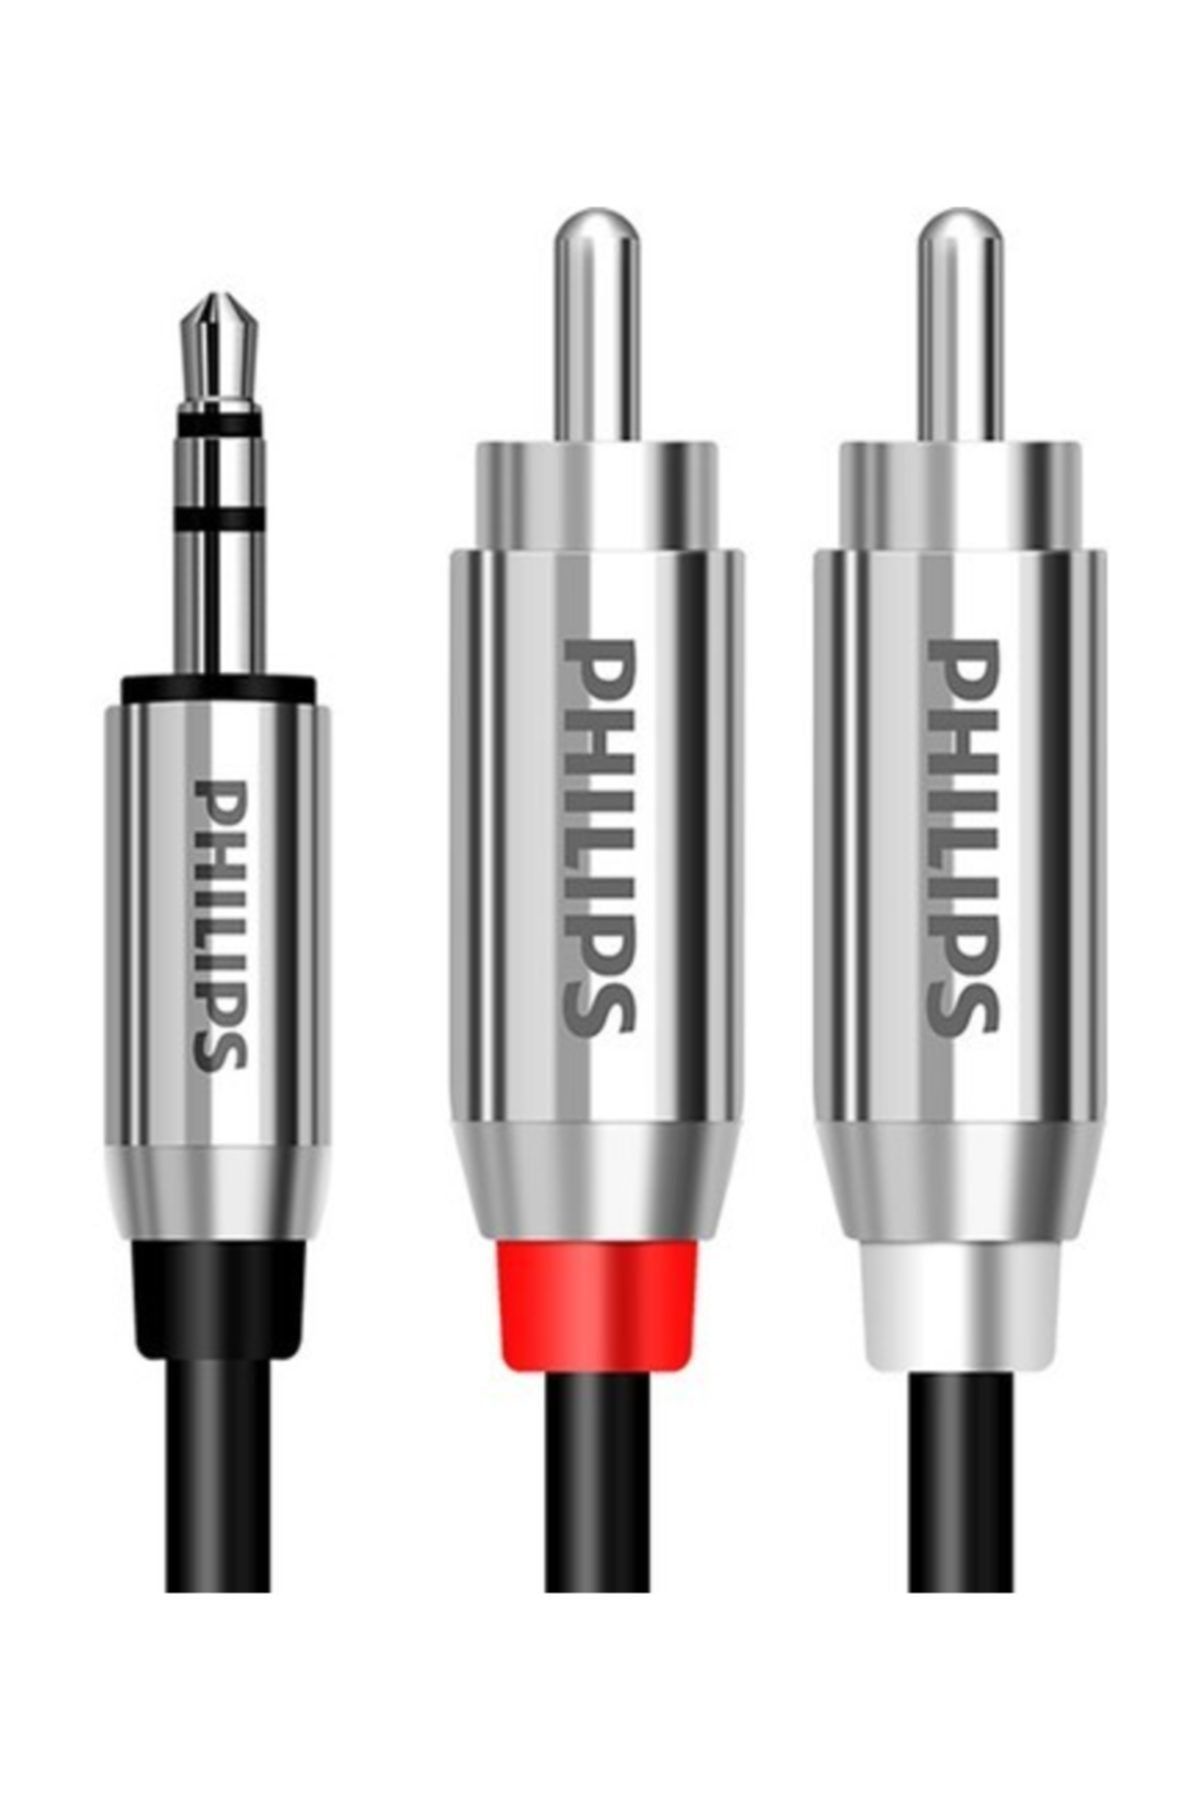 Philips Swr2120c Yüksek Kalite Rca To Aux Kablo 3.5mm To 2x Rca 2m